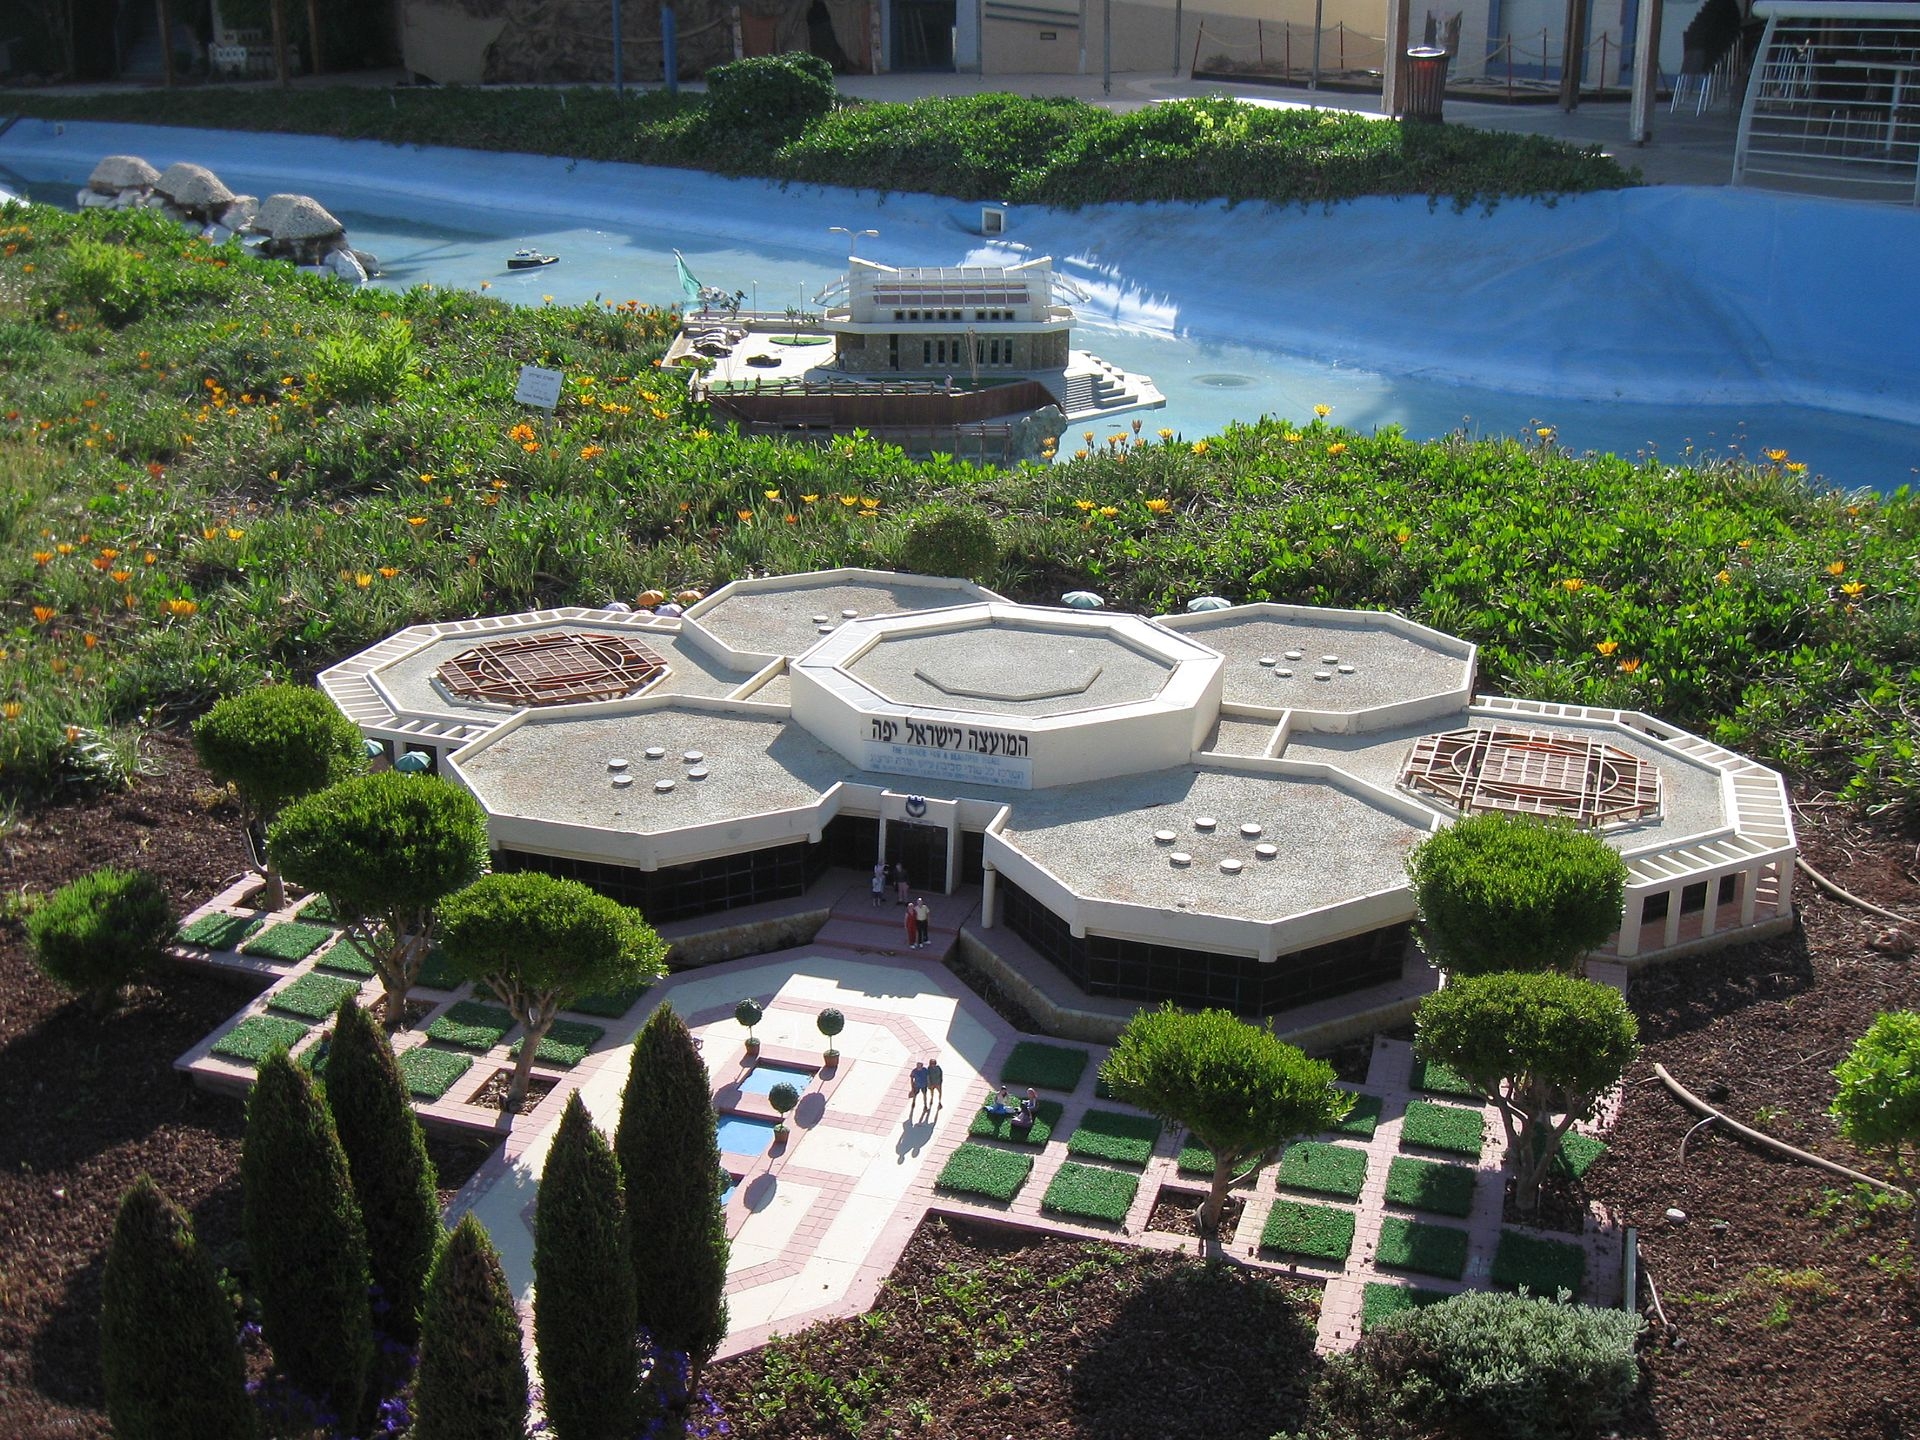 L’une des nombreuses miniatures de Mini Israel, une attraction populaire qui rassemble des centaines de répliques de monuments et bâtiments (Wikimedia Commons)